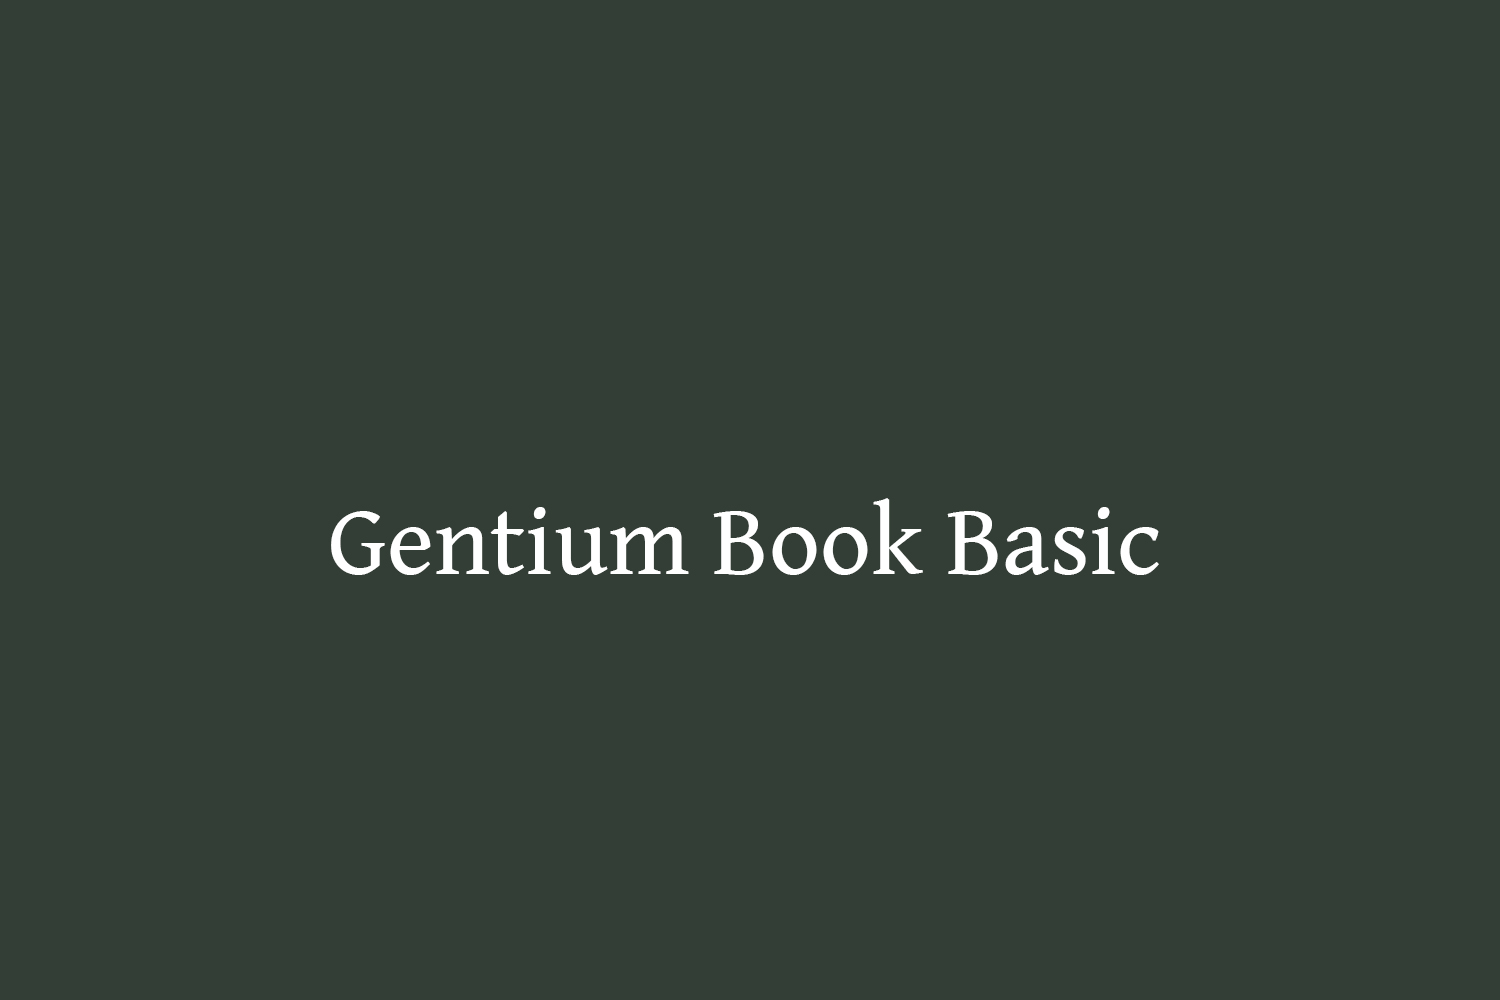 Gentium Book Basic